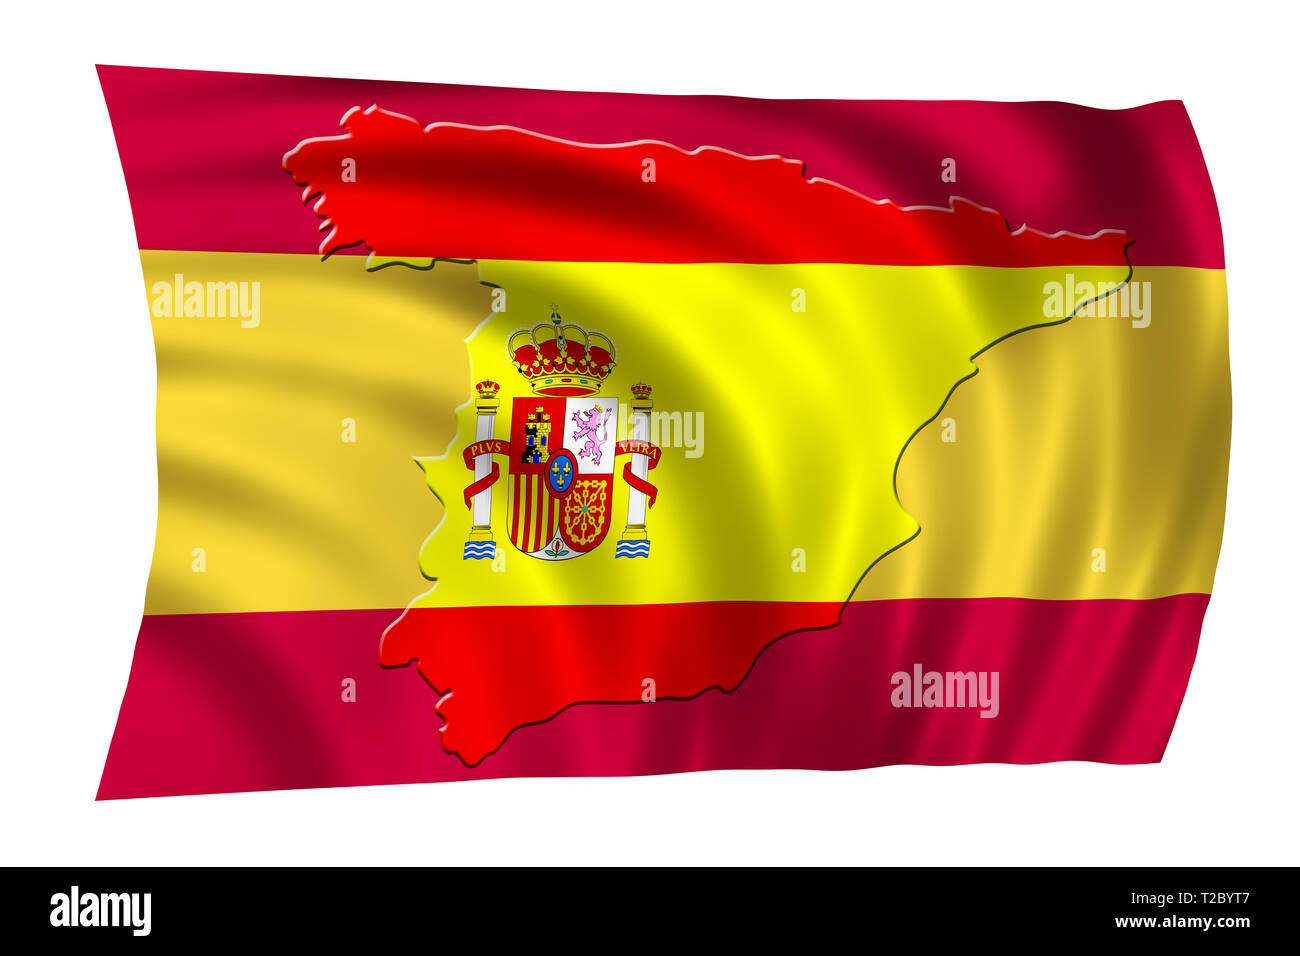 Espagne drapeau national avec forme de carte du pays. Concept patriotique Banque D'Images